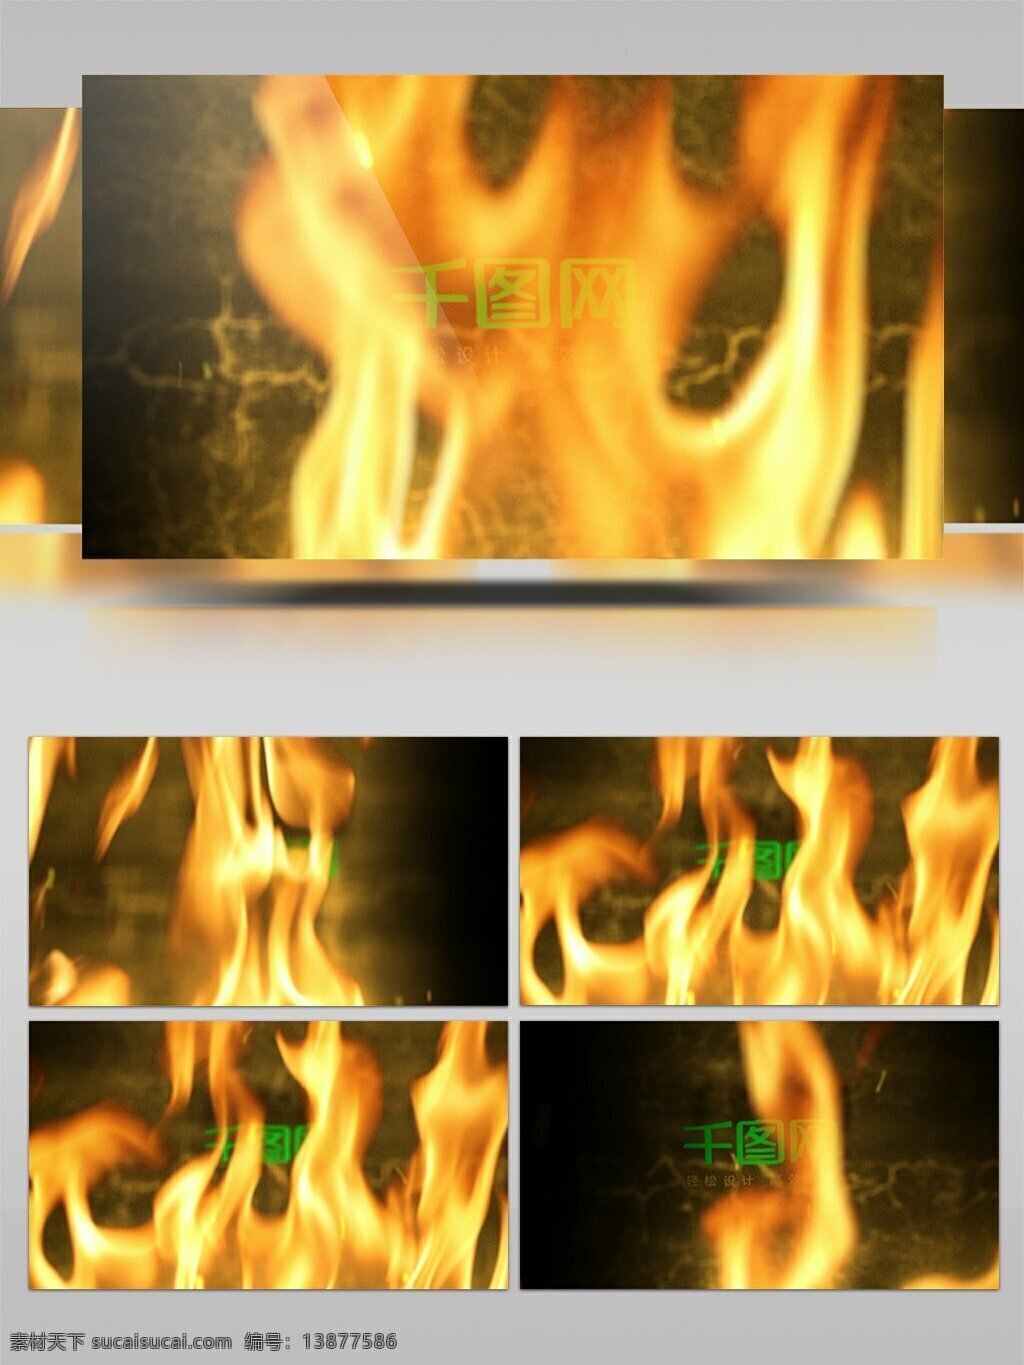 地狱 火焰 燃烧 logo 展示 ae 模板 文字 标志 特效 开场 logo演绎